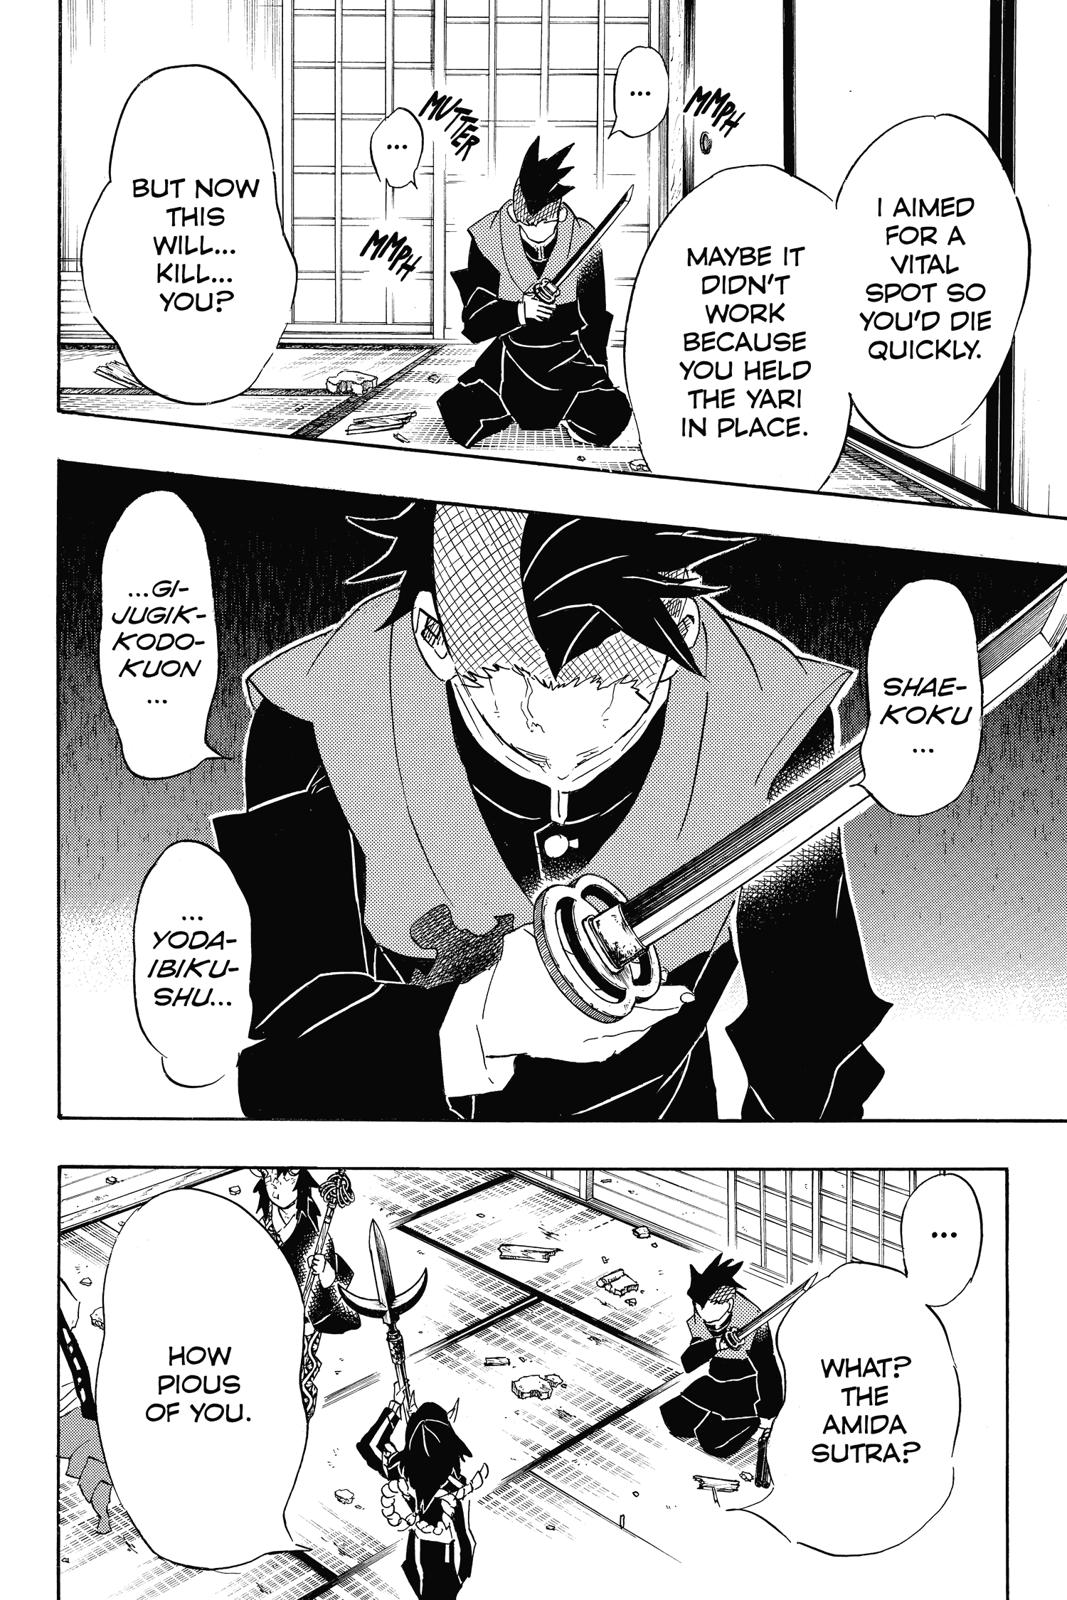 Demon Slayer Manga Manga Chapter - 109 - image 3